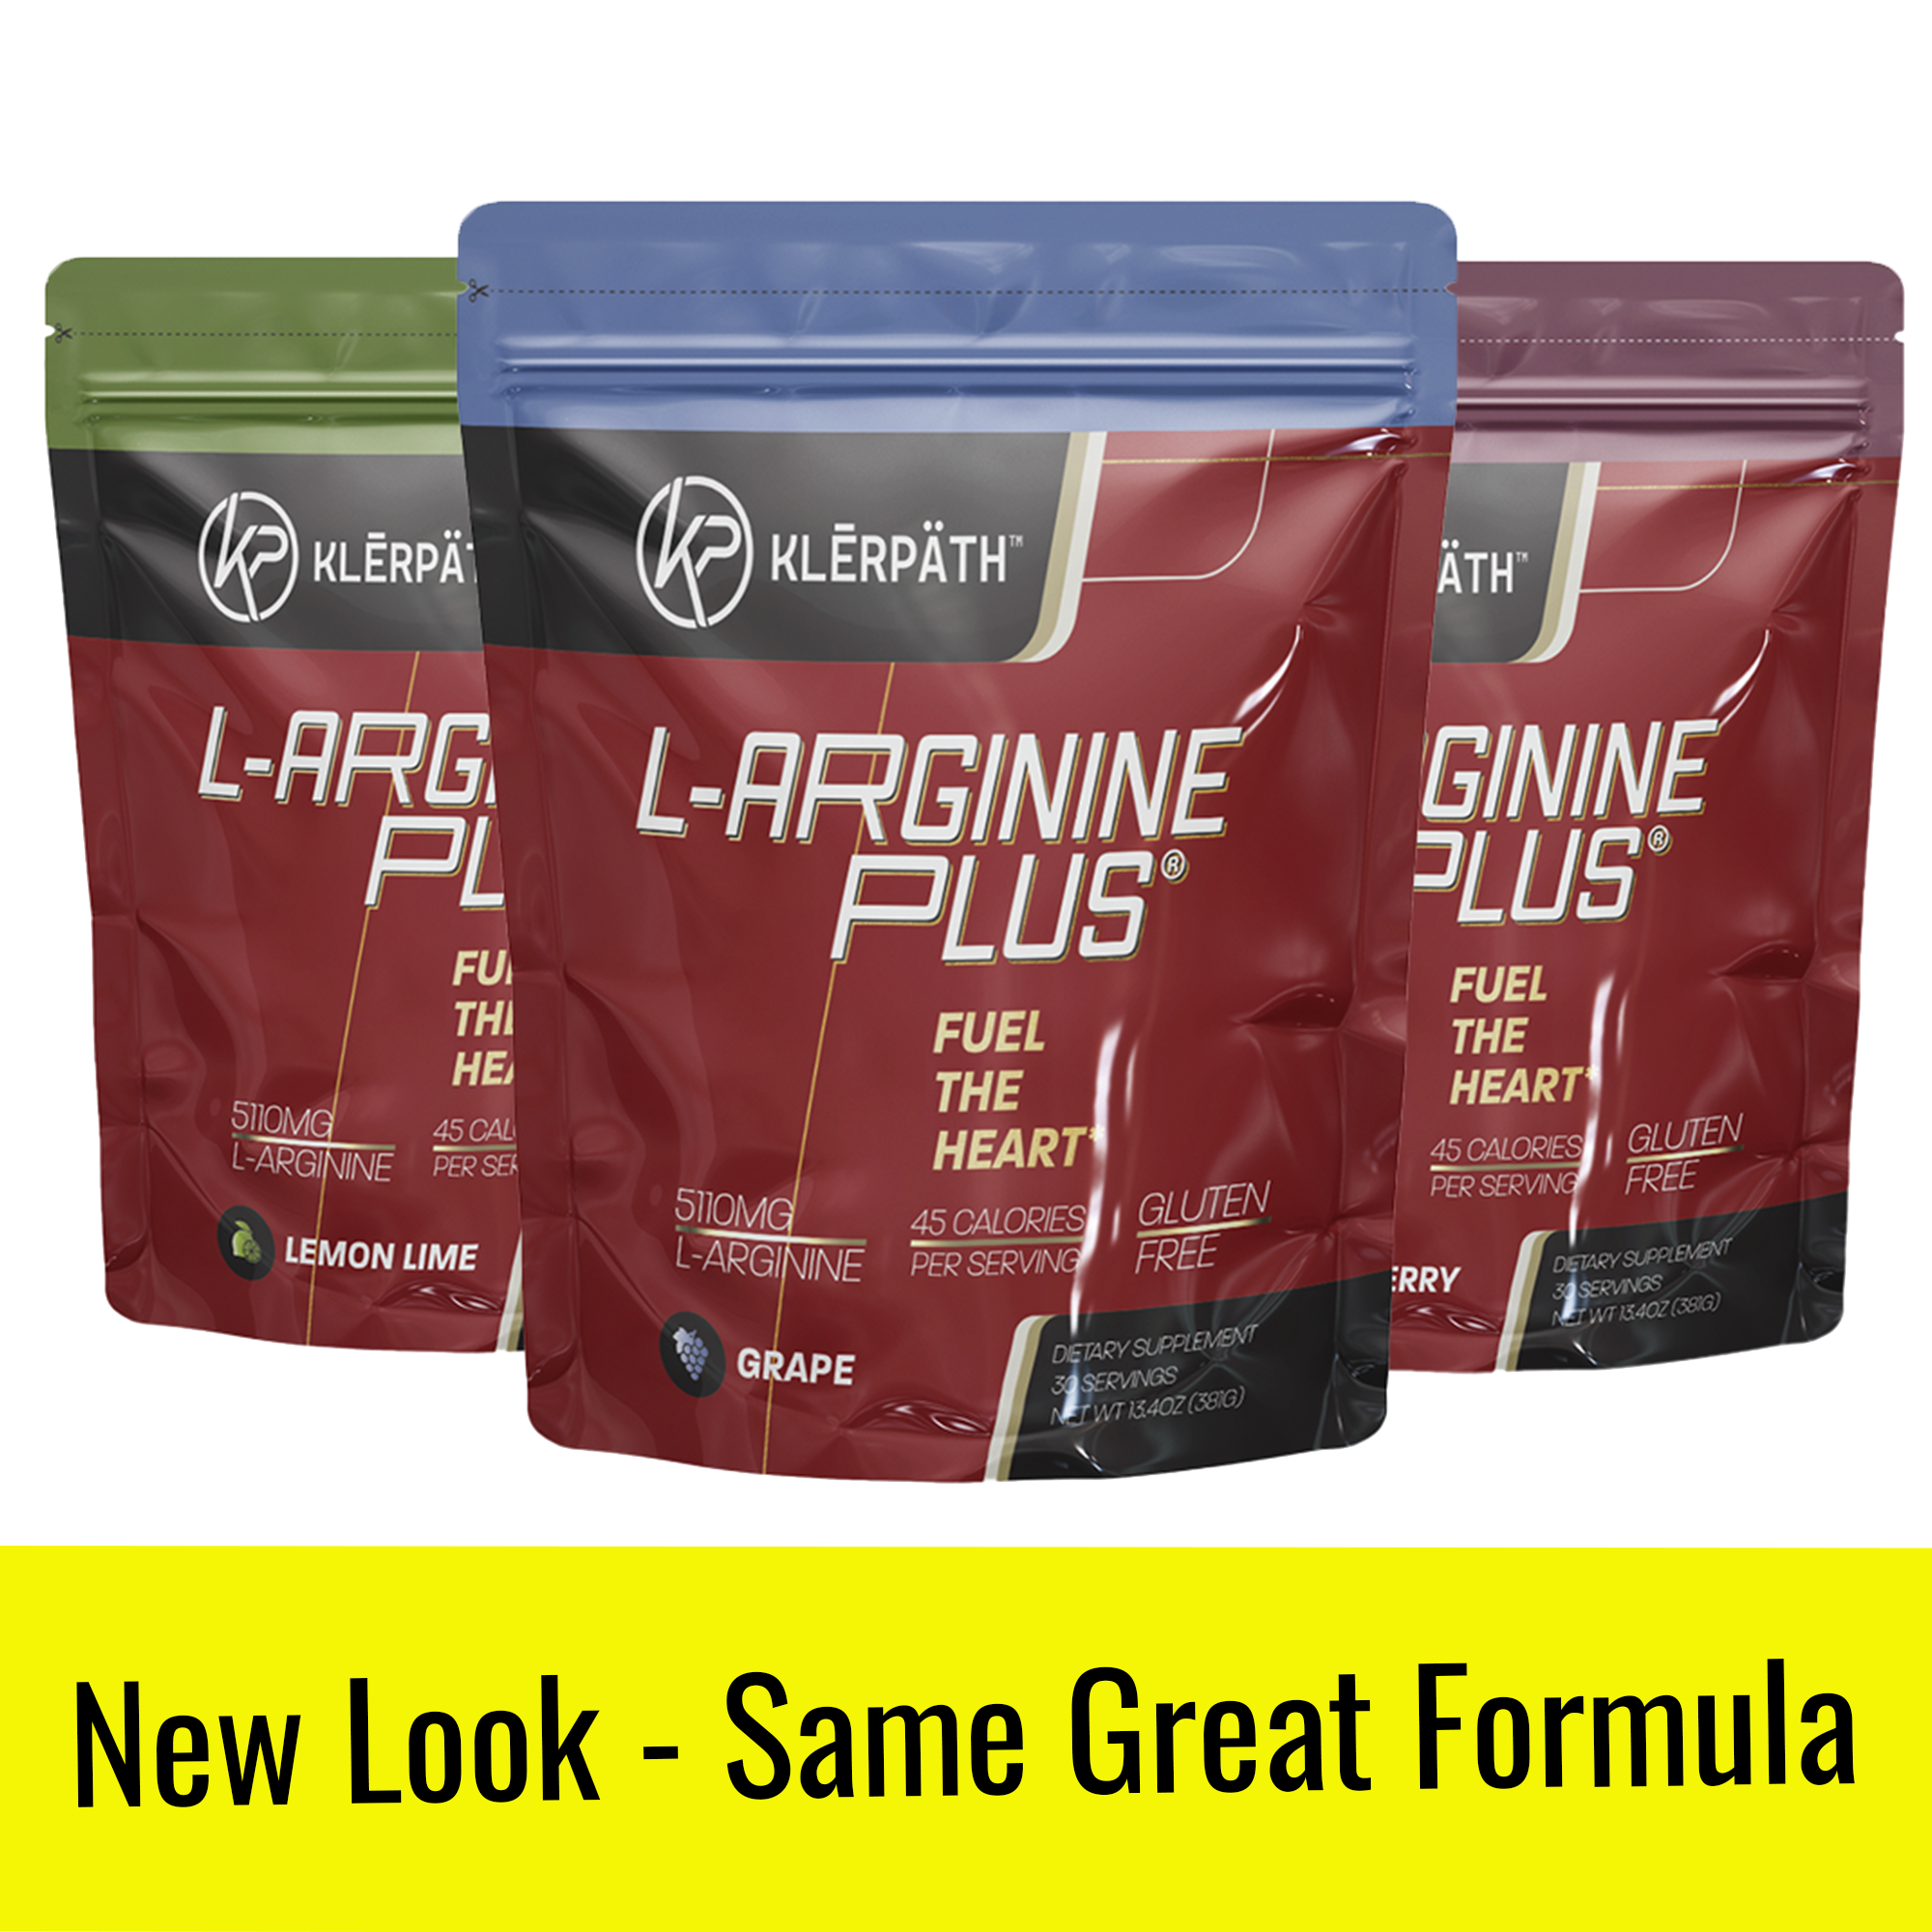 L-arginine Plus Ingredients